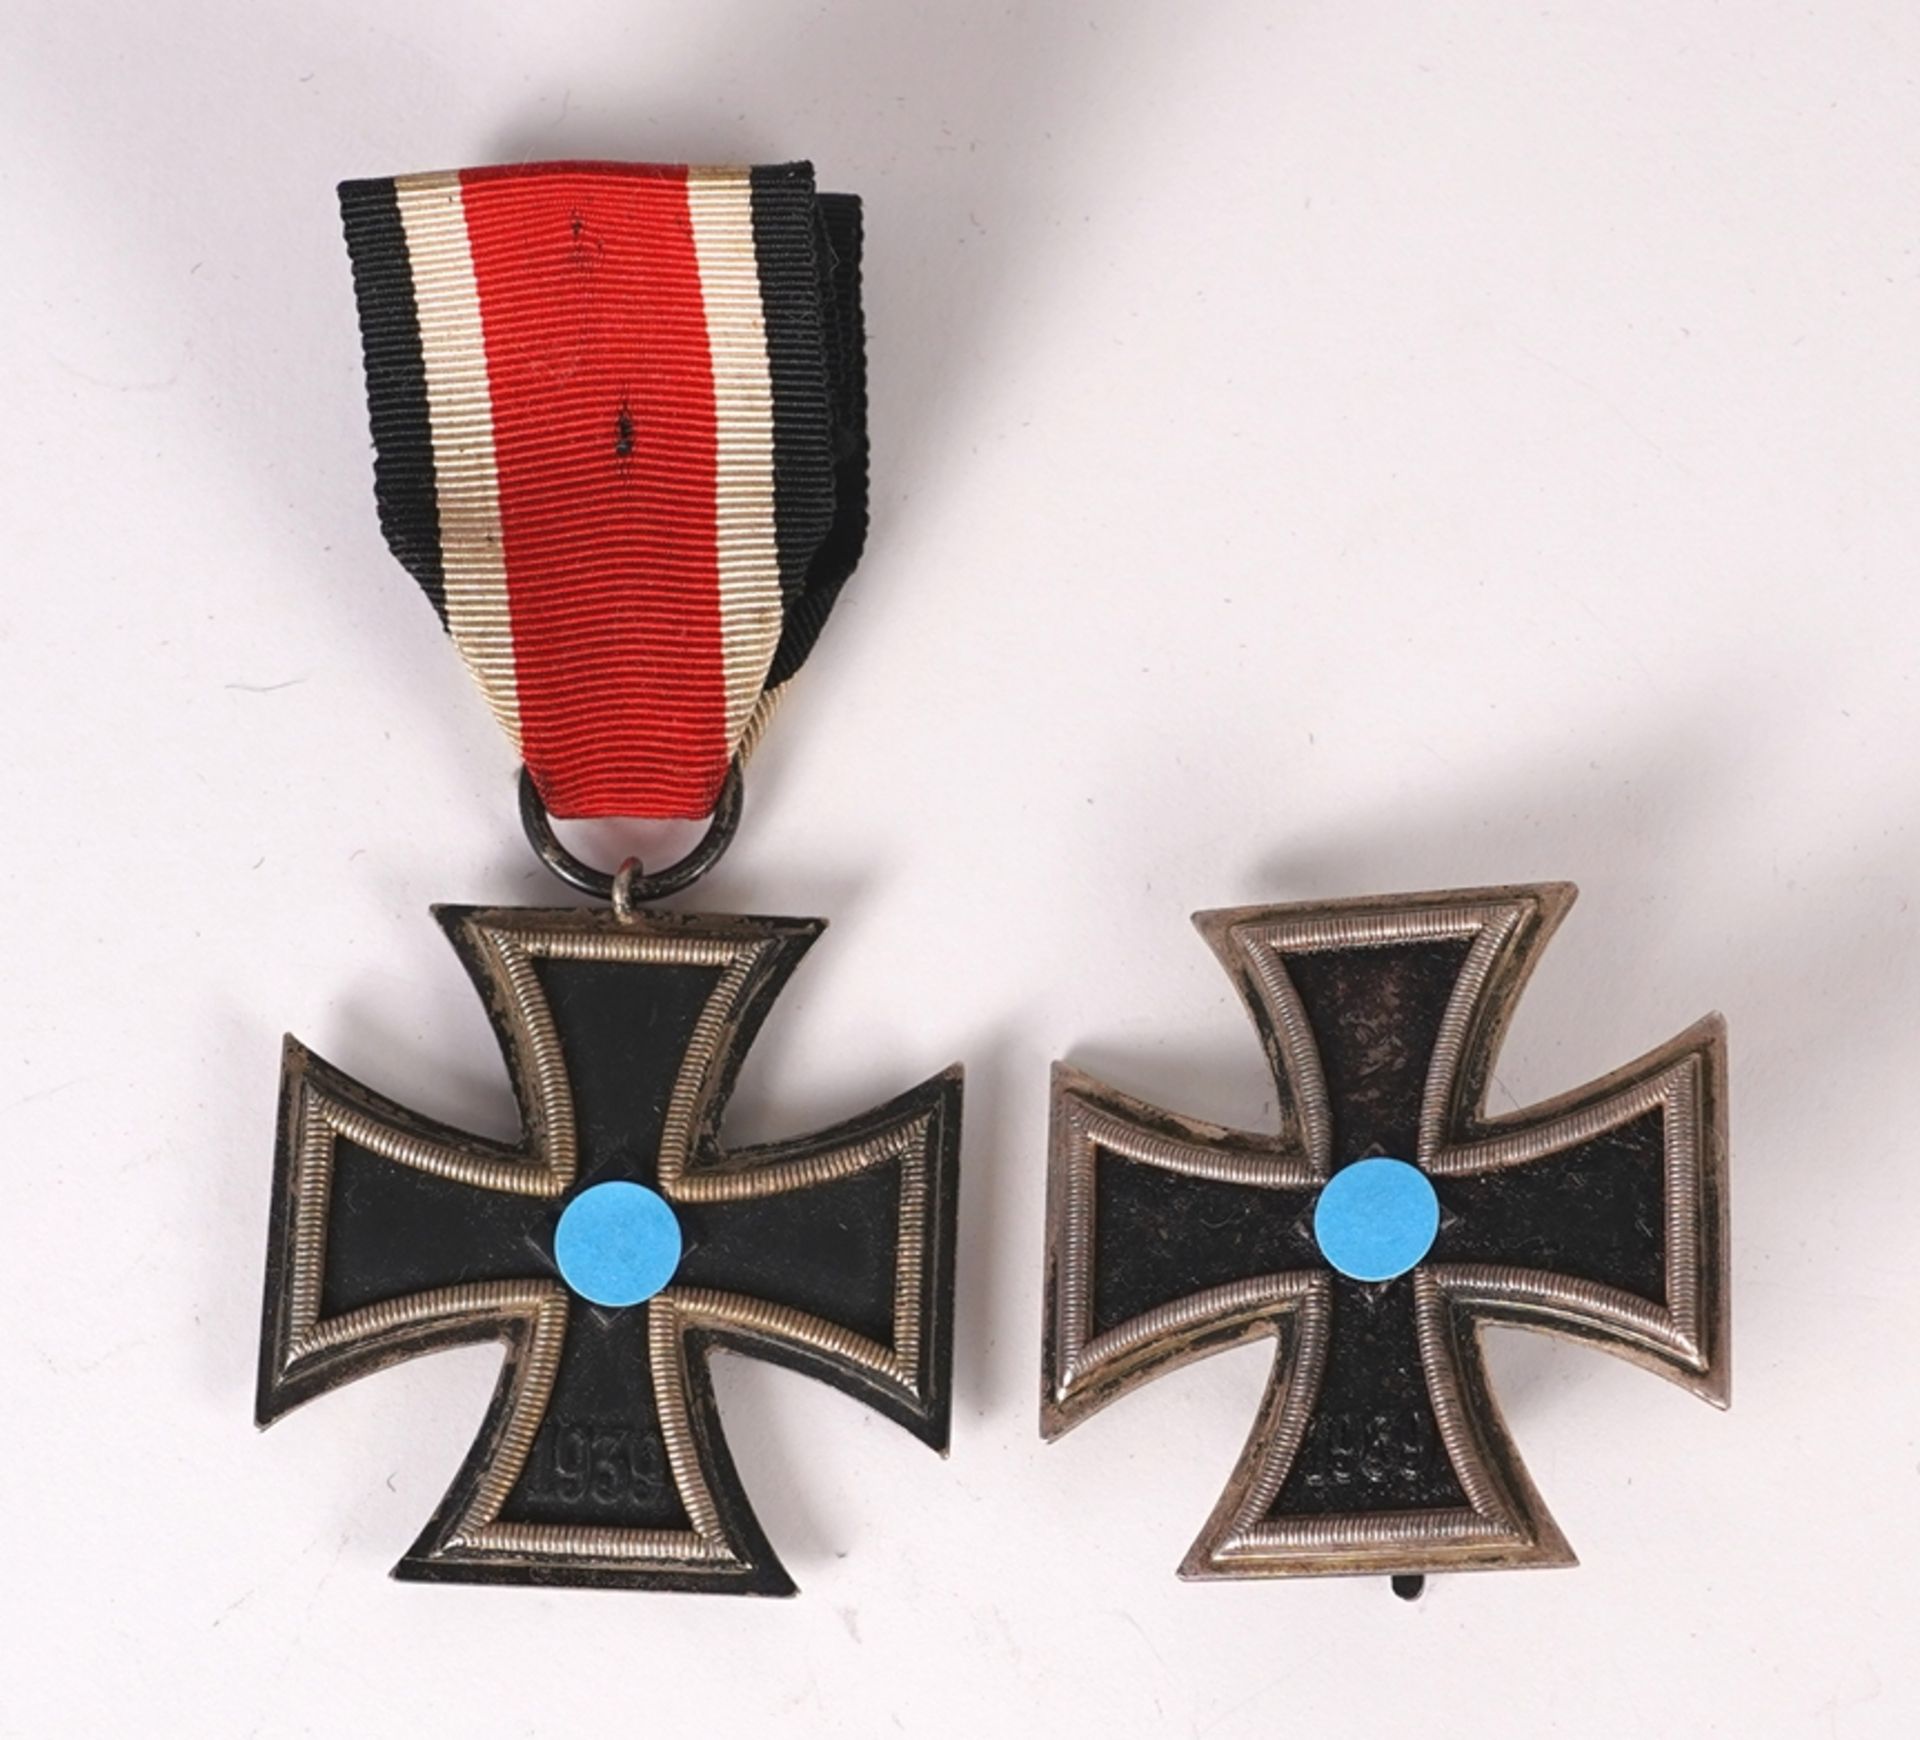 Two iron crosses